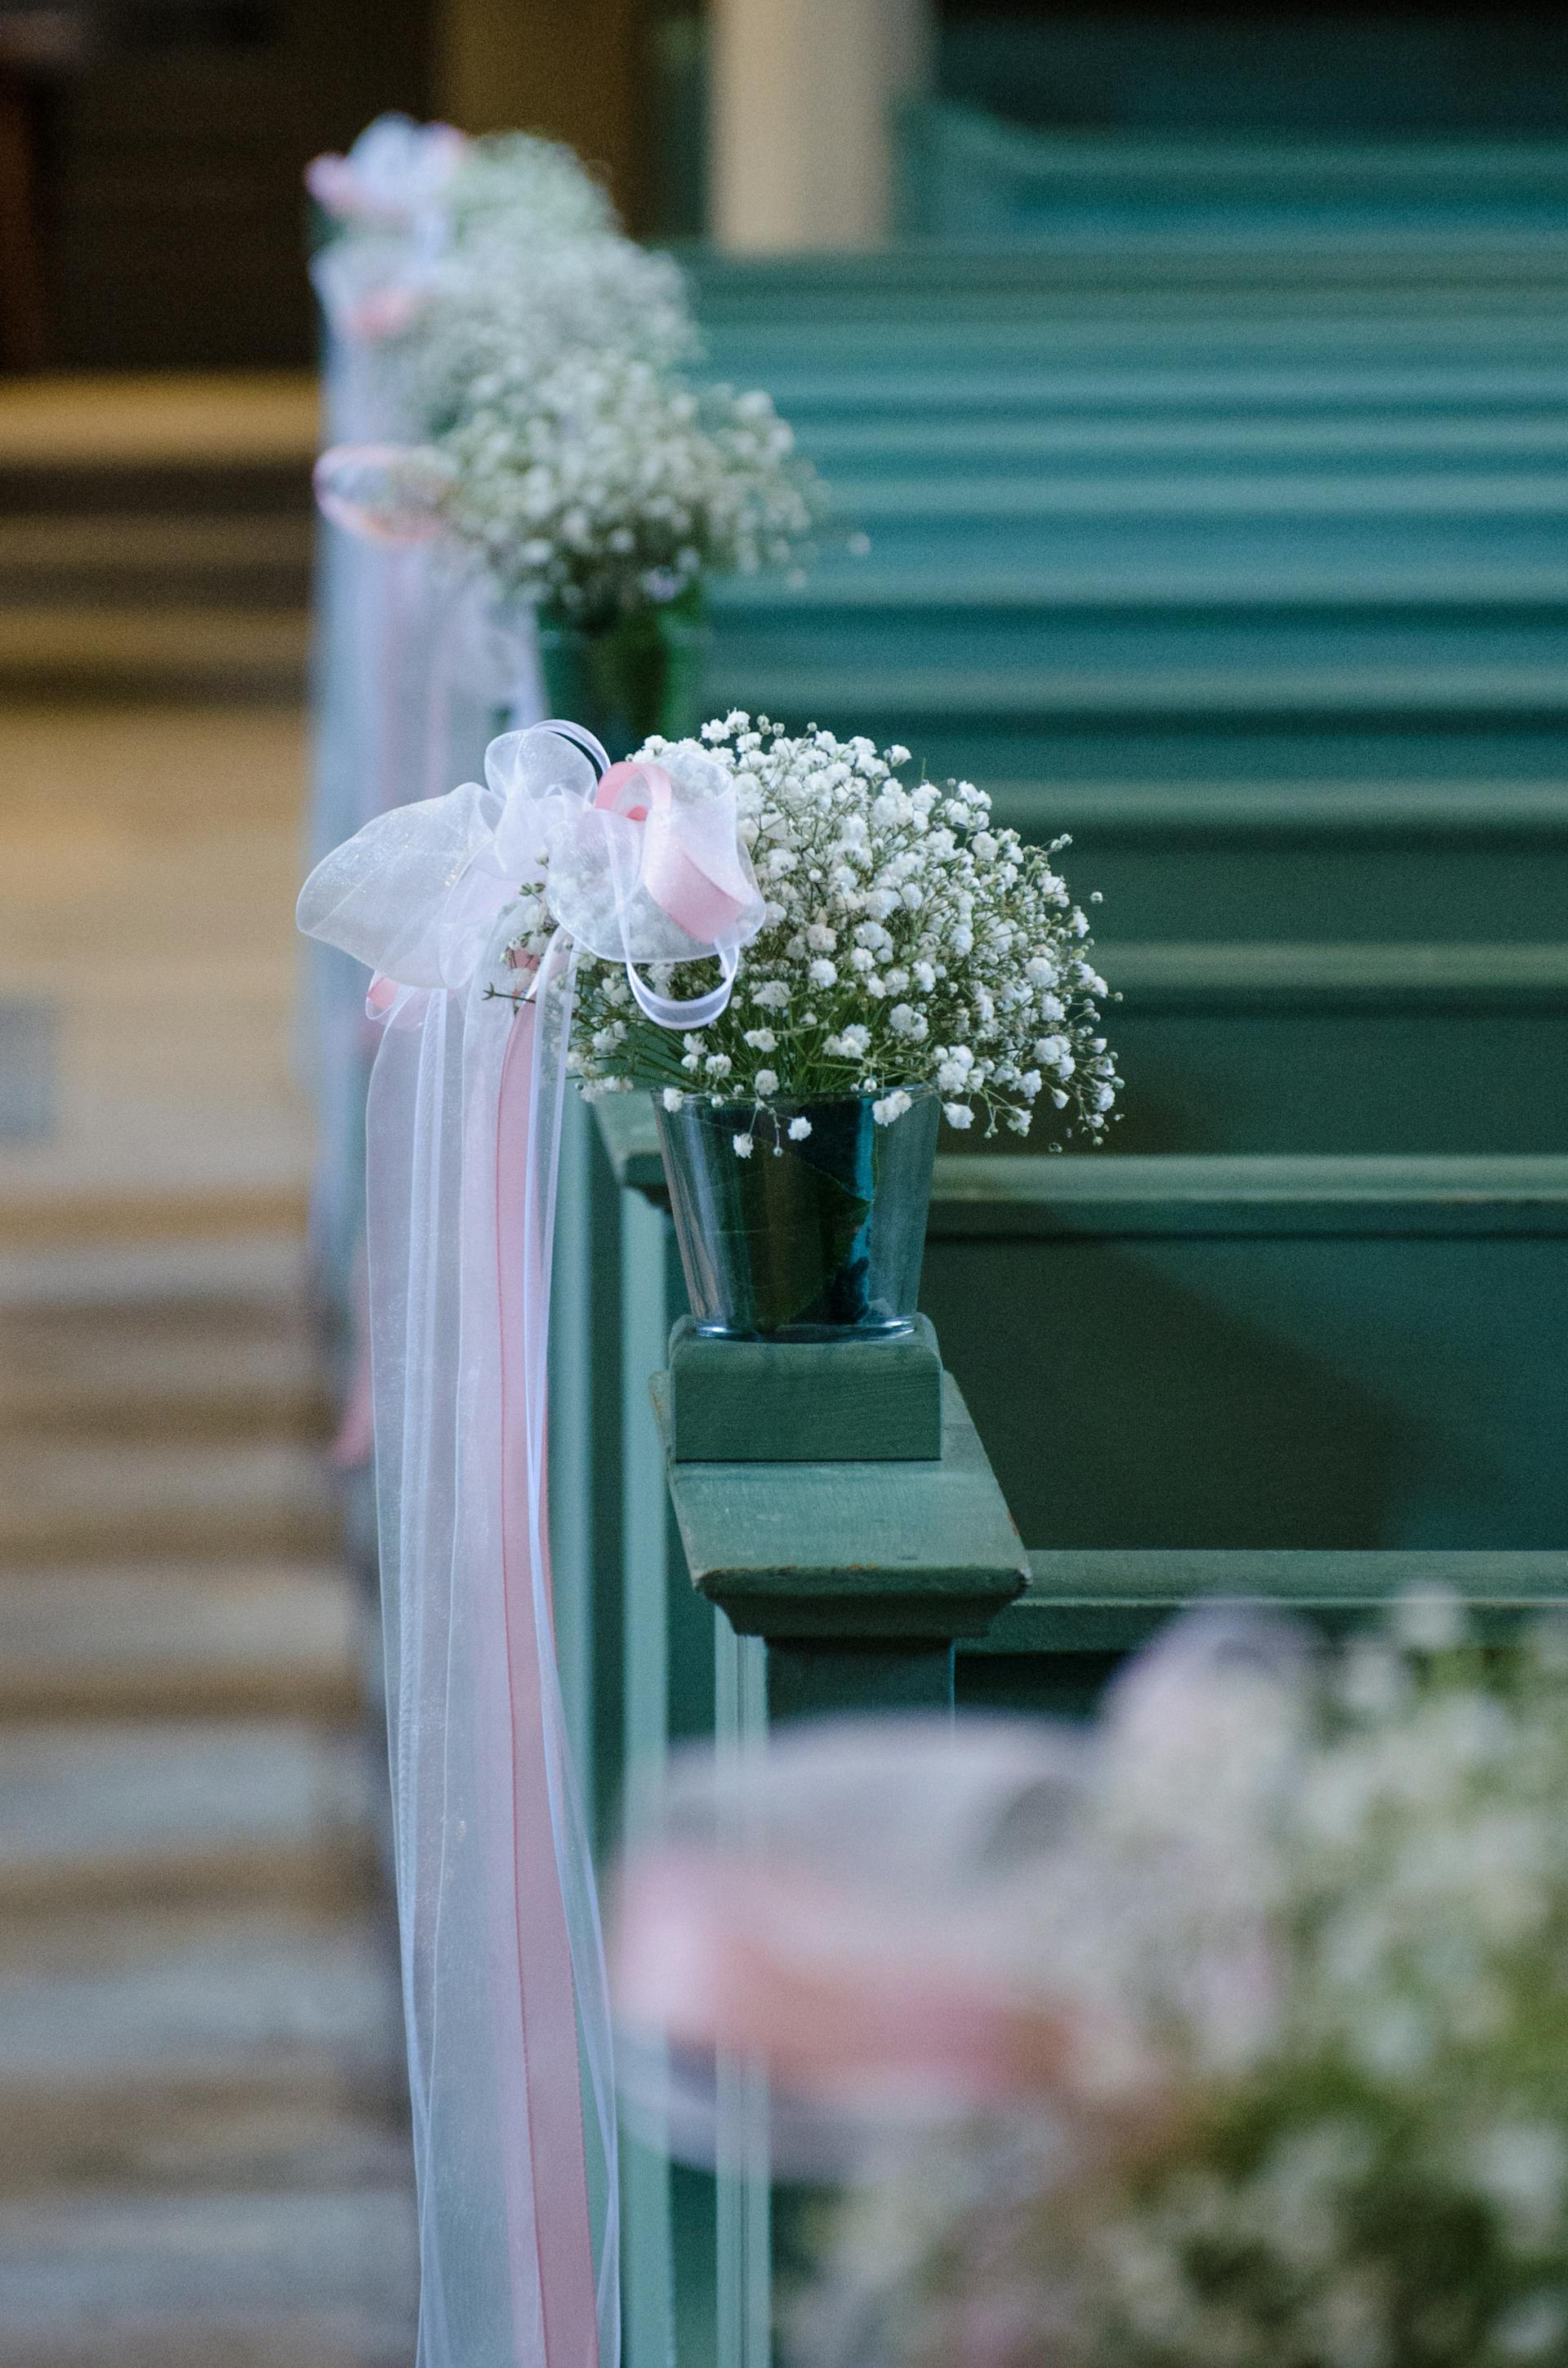 Kirchenbänke mit Blumen | Quelle: Pexels